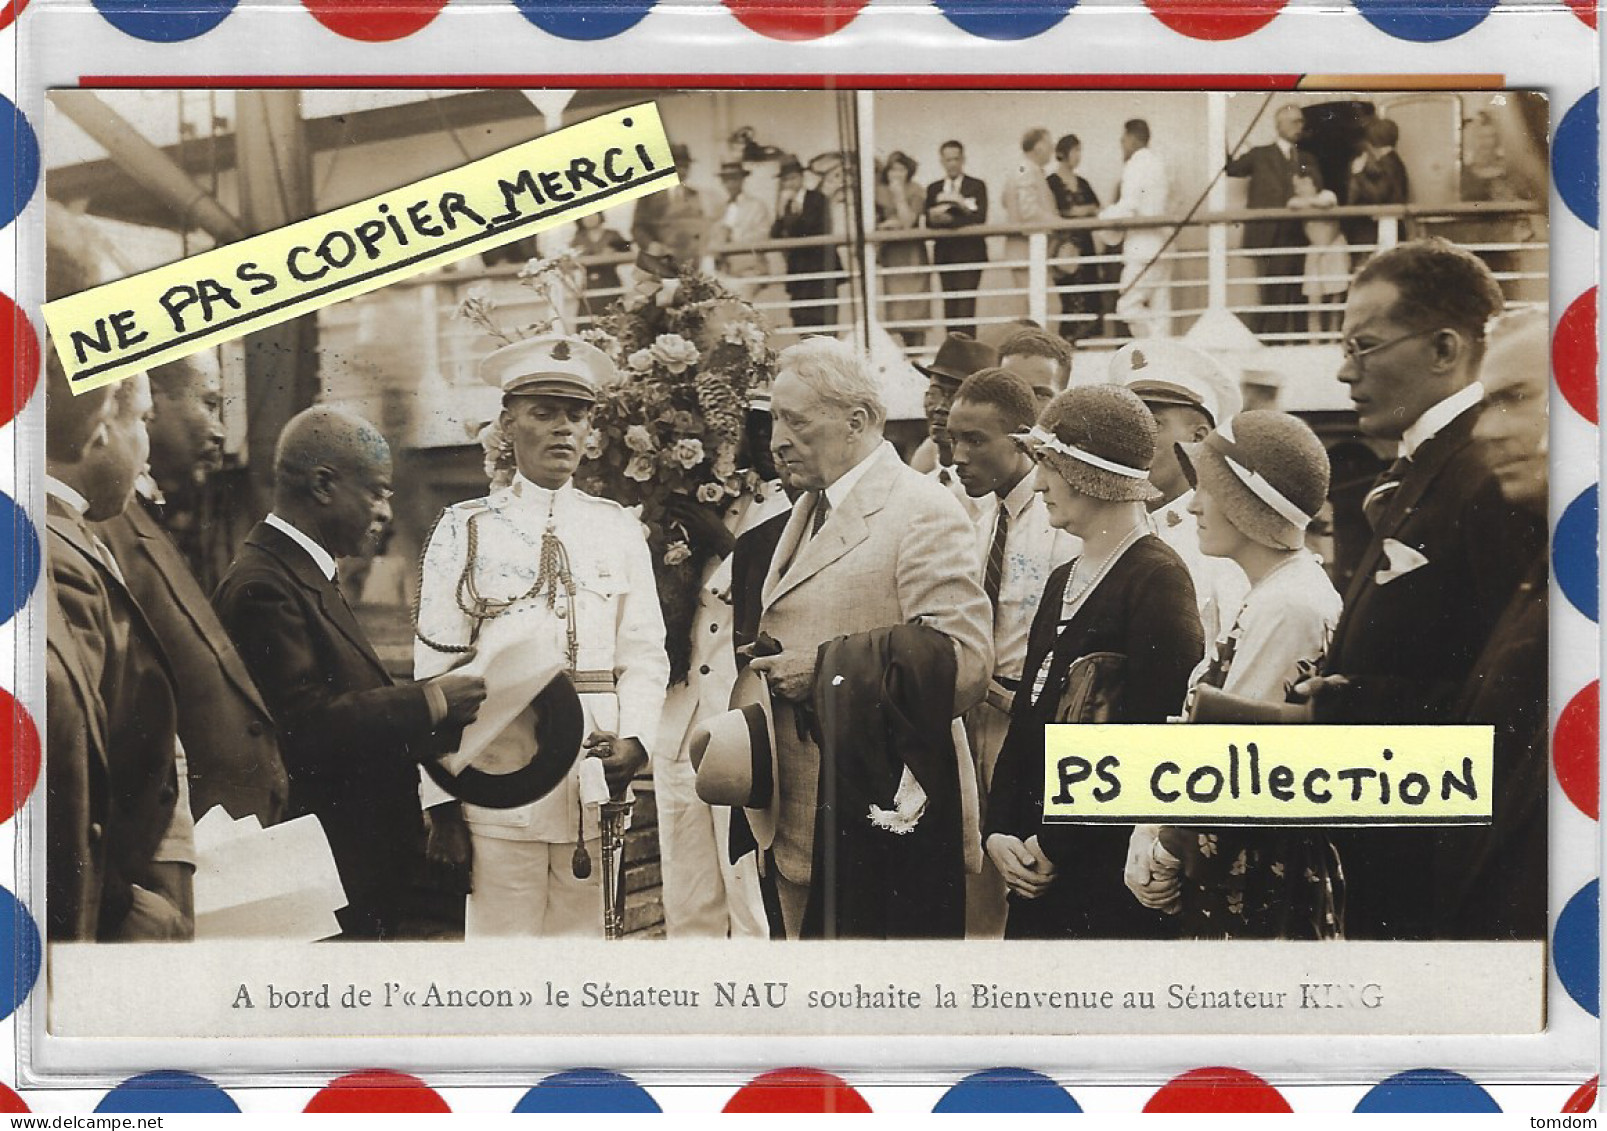 Antilles *** Haïti - A Bord De L'Ancon Le Sénateur NAU Souhaite La Bienvenue Au Sénateur King Le 27/03/1921 /carte Photo - Haïti